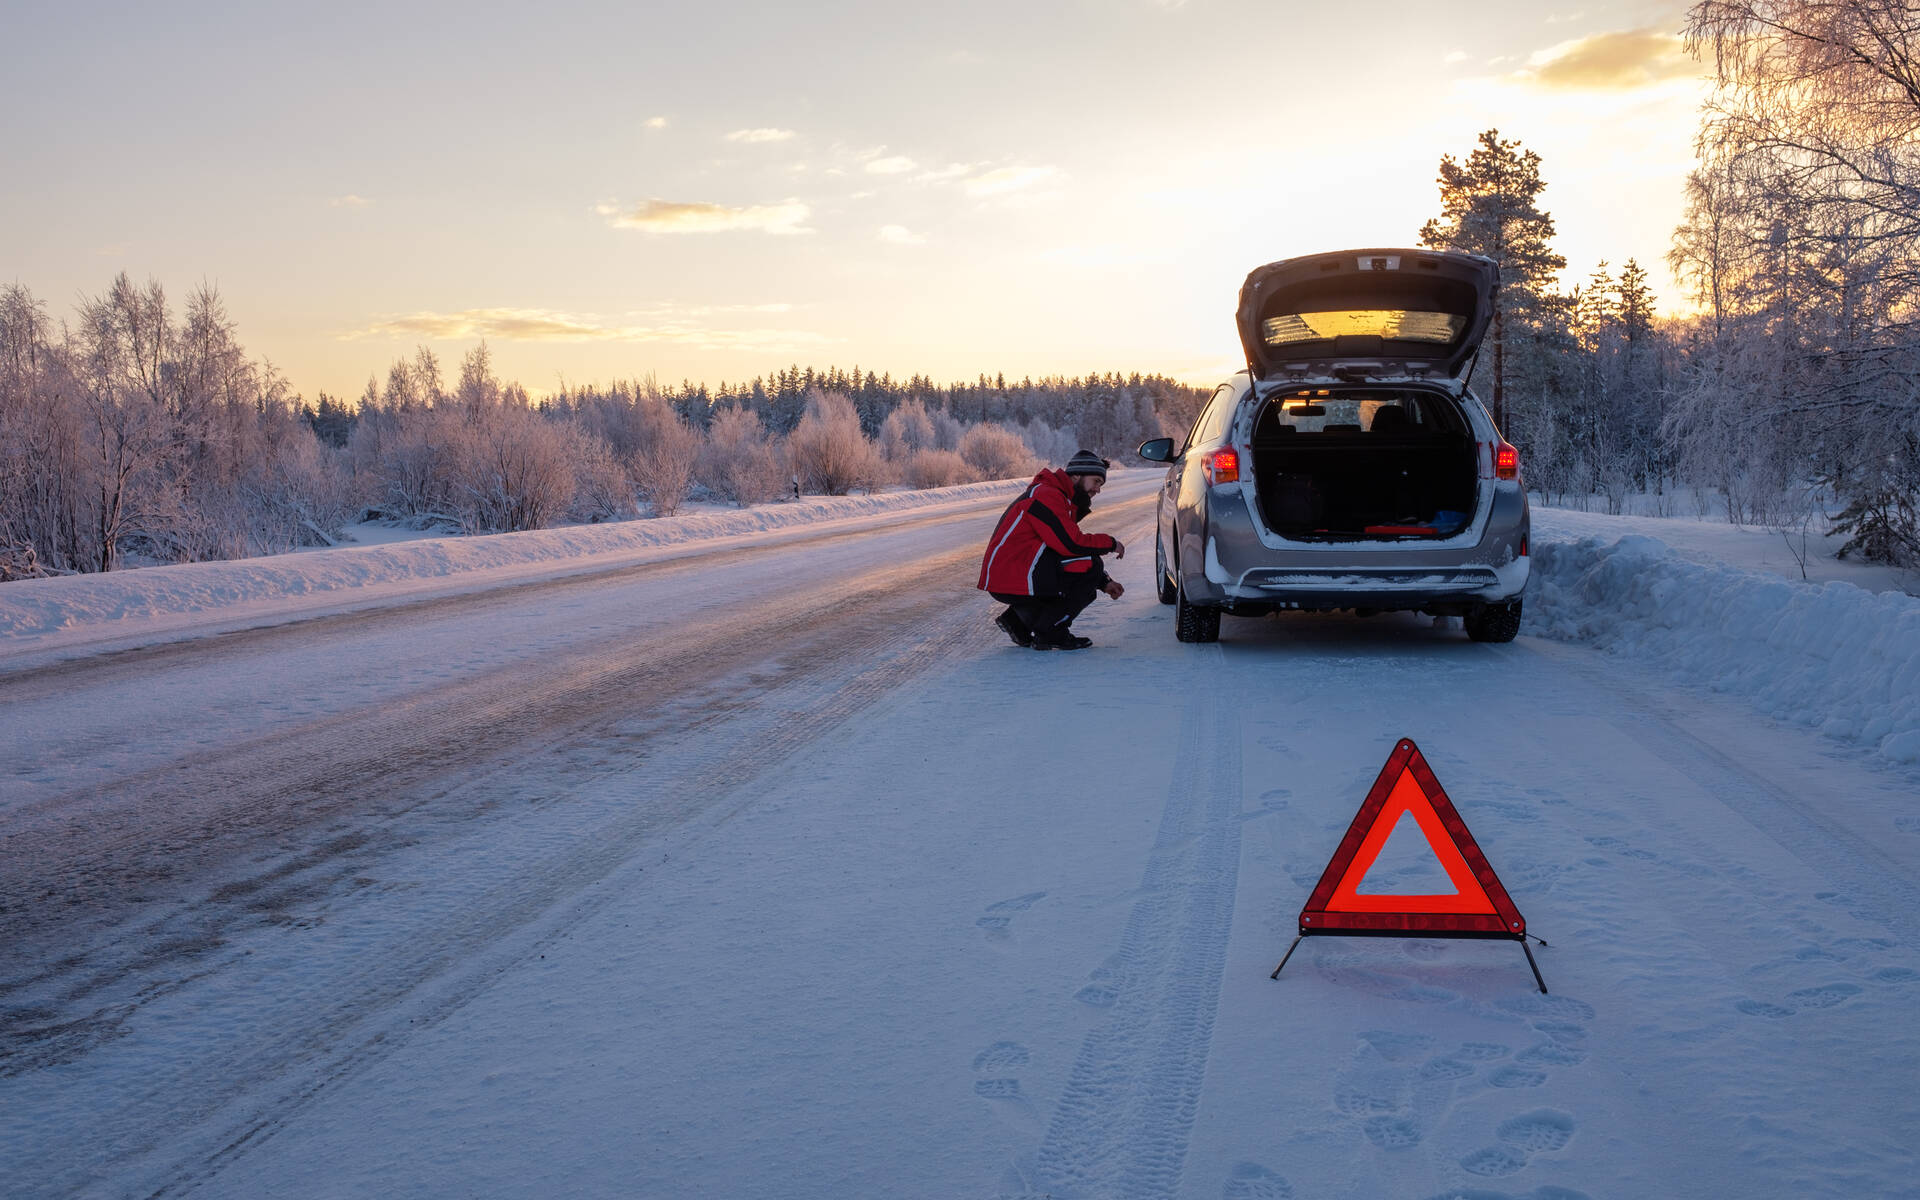 Comment bien préparer son véhicule pour l'hiver - Guide Auto